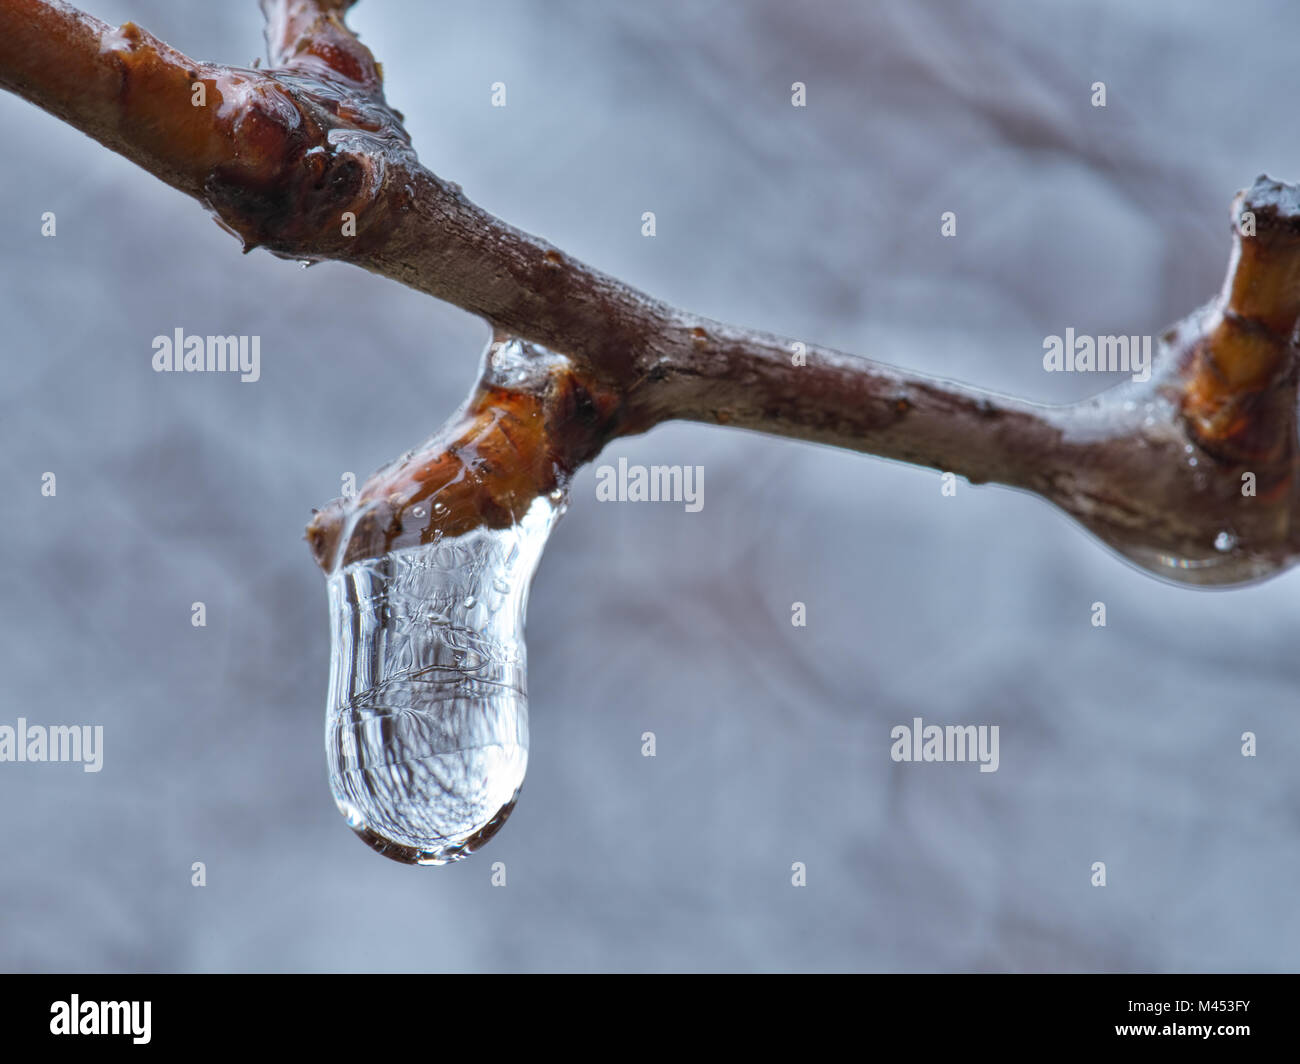 https://c8.alamy.com/comp/M453FY/macro-shot-of-frozen-water-drop-on-the-branch-M453FY.jpg